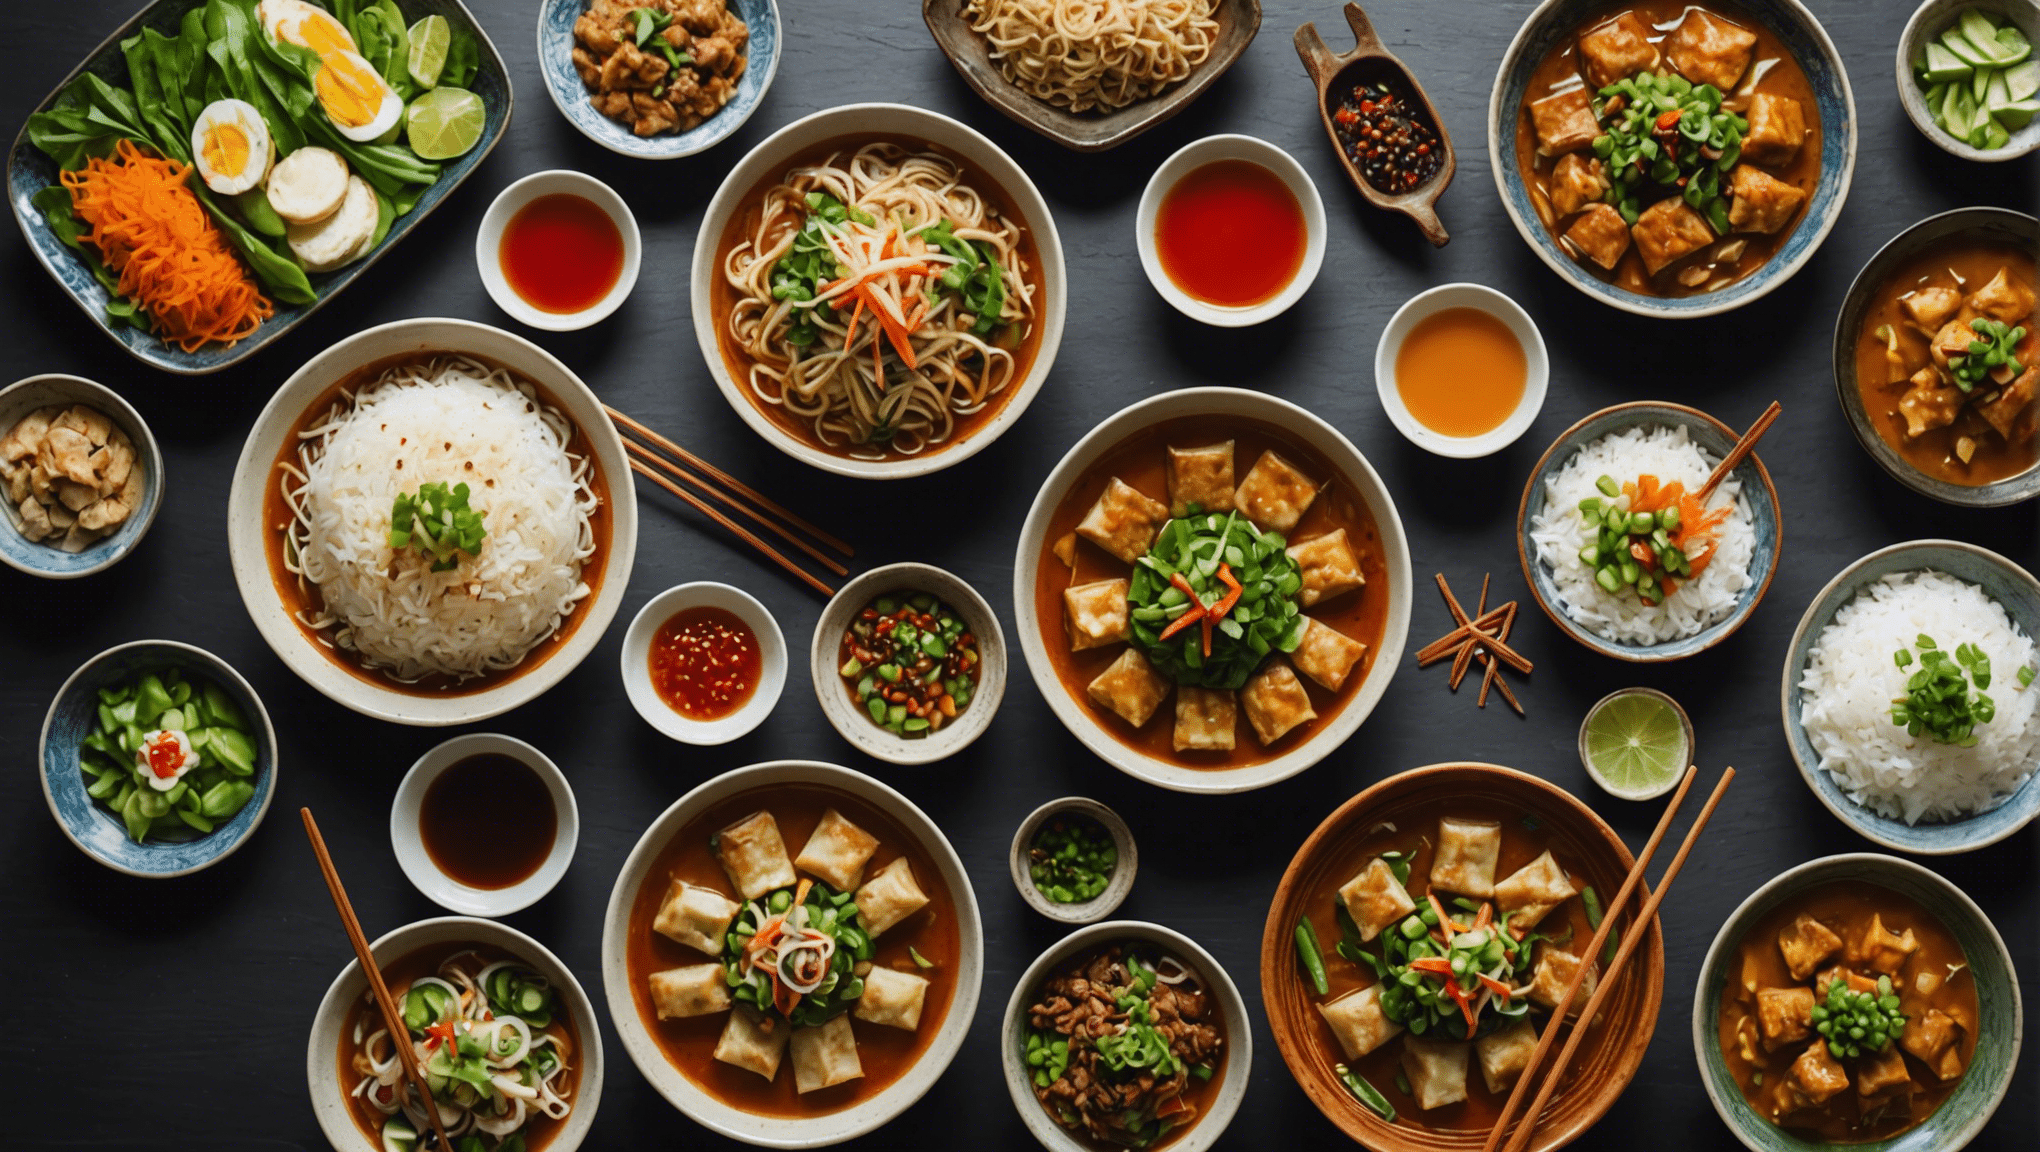 découvrez les délices de la gastronomie asiatique lors d'un voyage culinaire en asie et laissez-vous enivrer par les saveurs exotiques, les épices envoûtantes et les plats traditionnels qui éveilleront vos papilles à de nouvelles expériences gustatives.